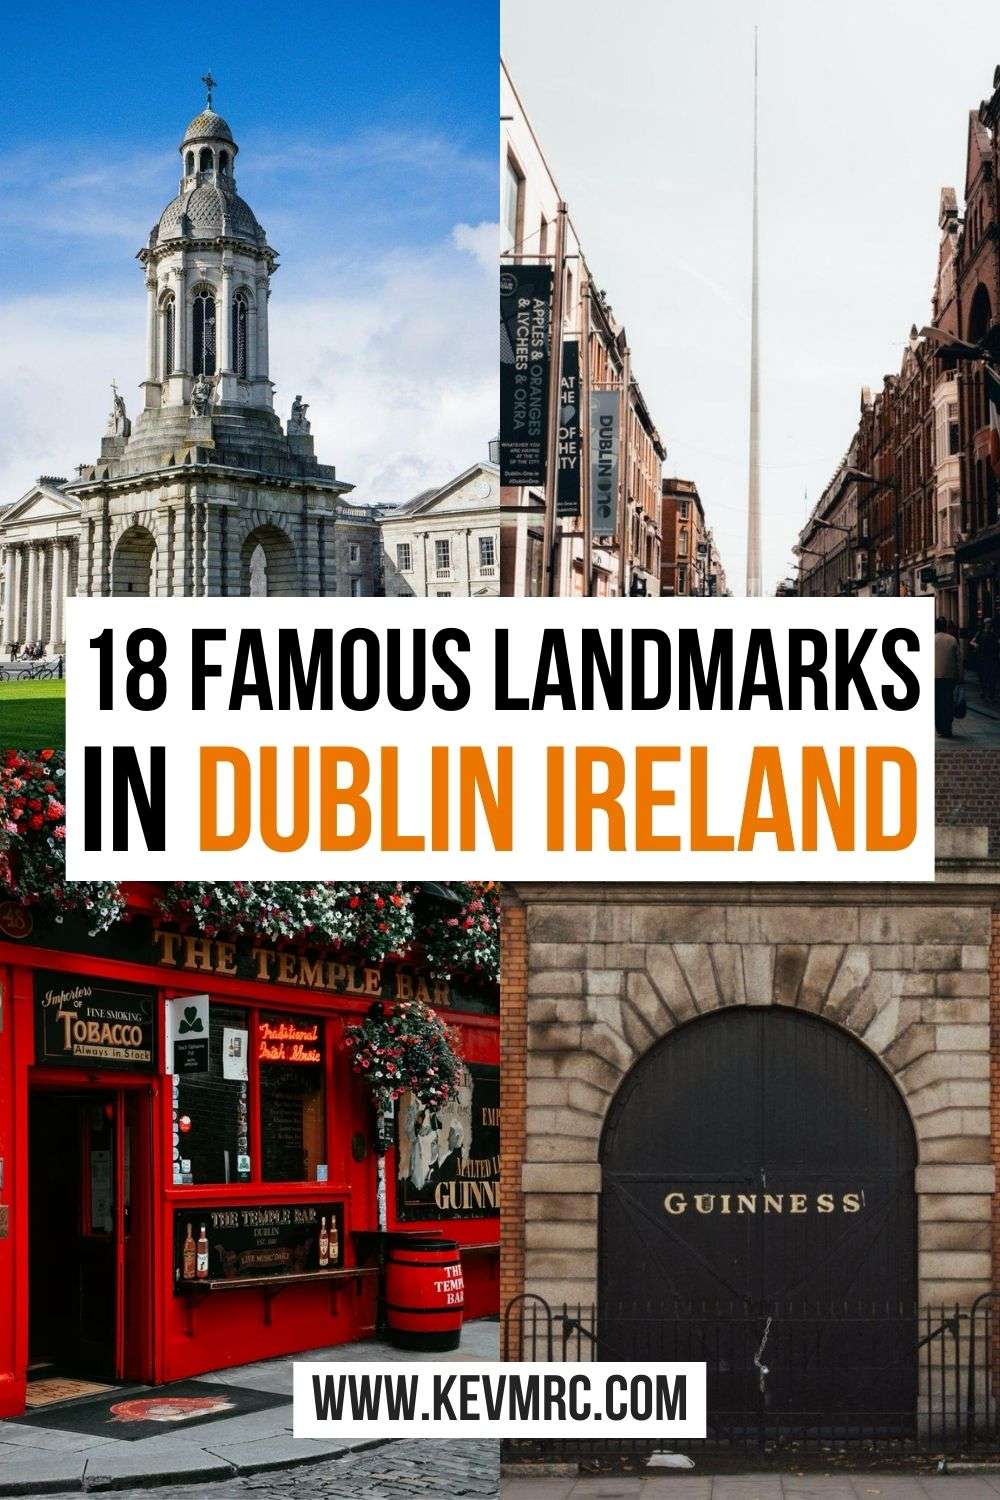 18 famous landmarks in Dublin Ireland. Discover the best places to see in Dublin Ireland. ireland travel | dublin travel #dublin